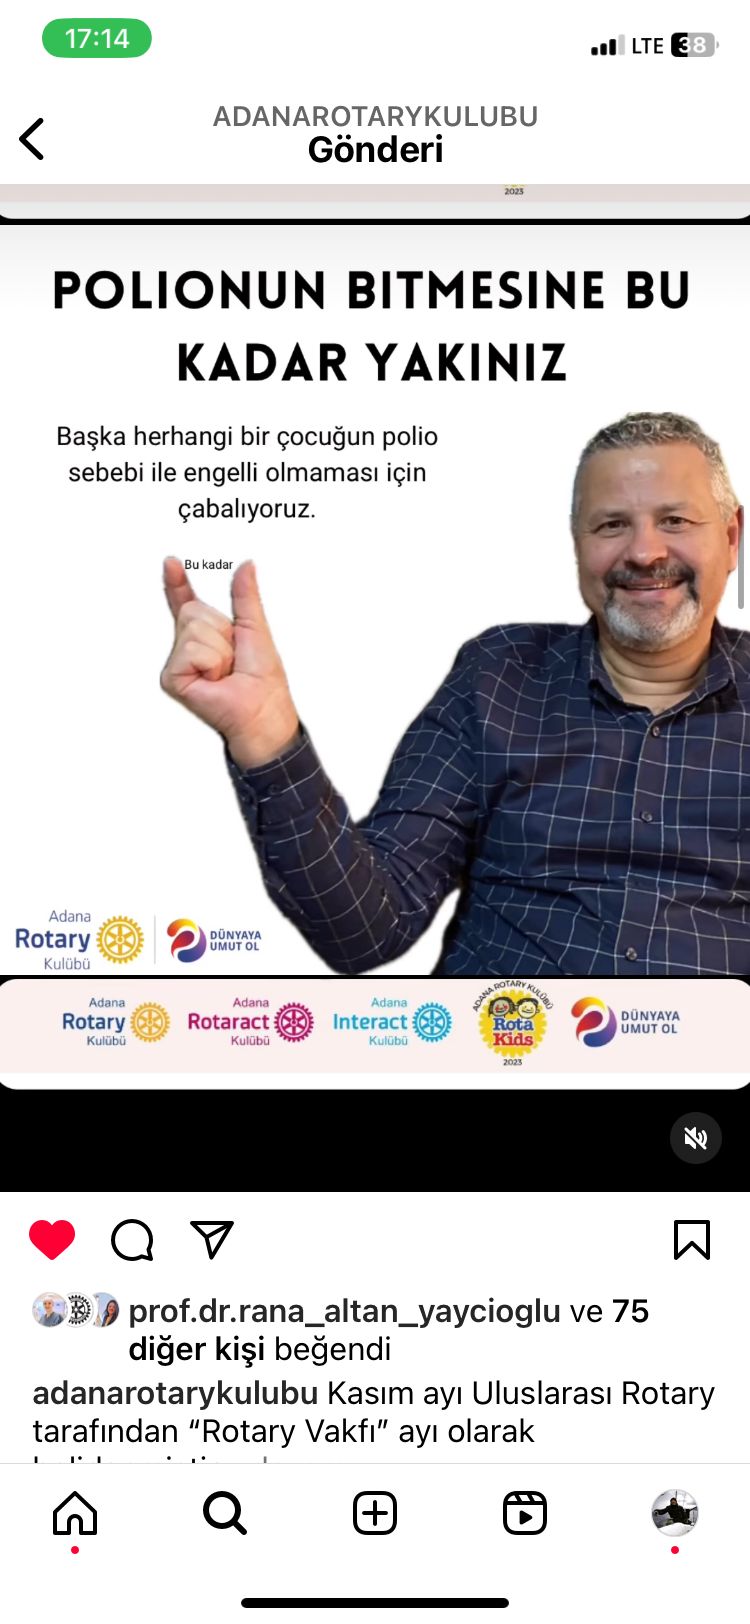 Adana Rotary Kulübü, Adana Rotaract Kulübü, Adana Interact Kulübü ve Adana Rotakids Kulübü Üyelerinin Çocuk Felci ile Mücadele Farkındalığı İçin Video Yayınladı